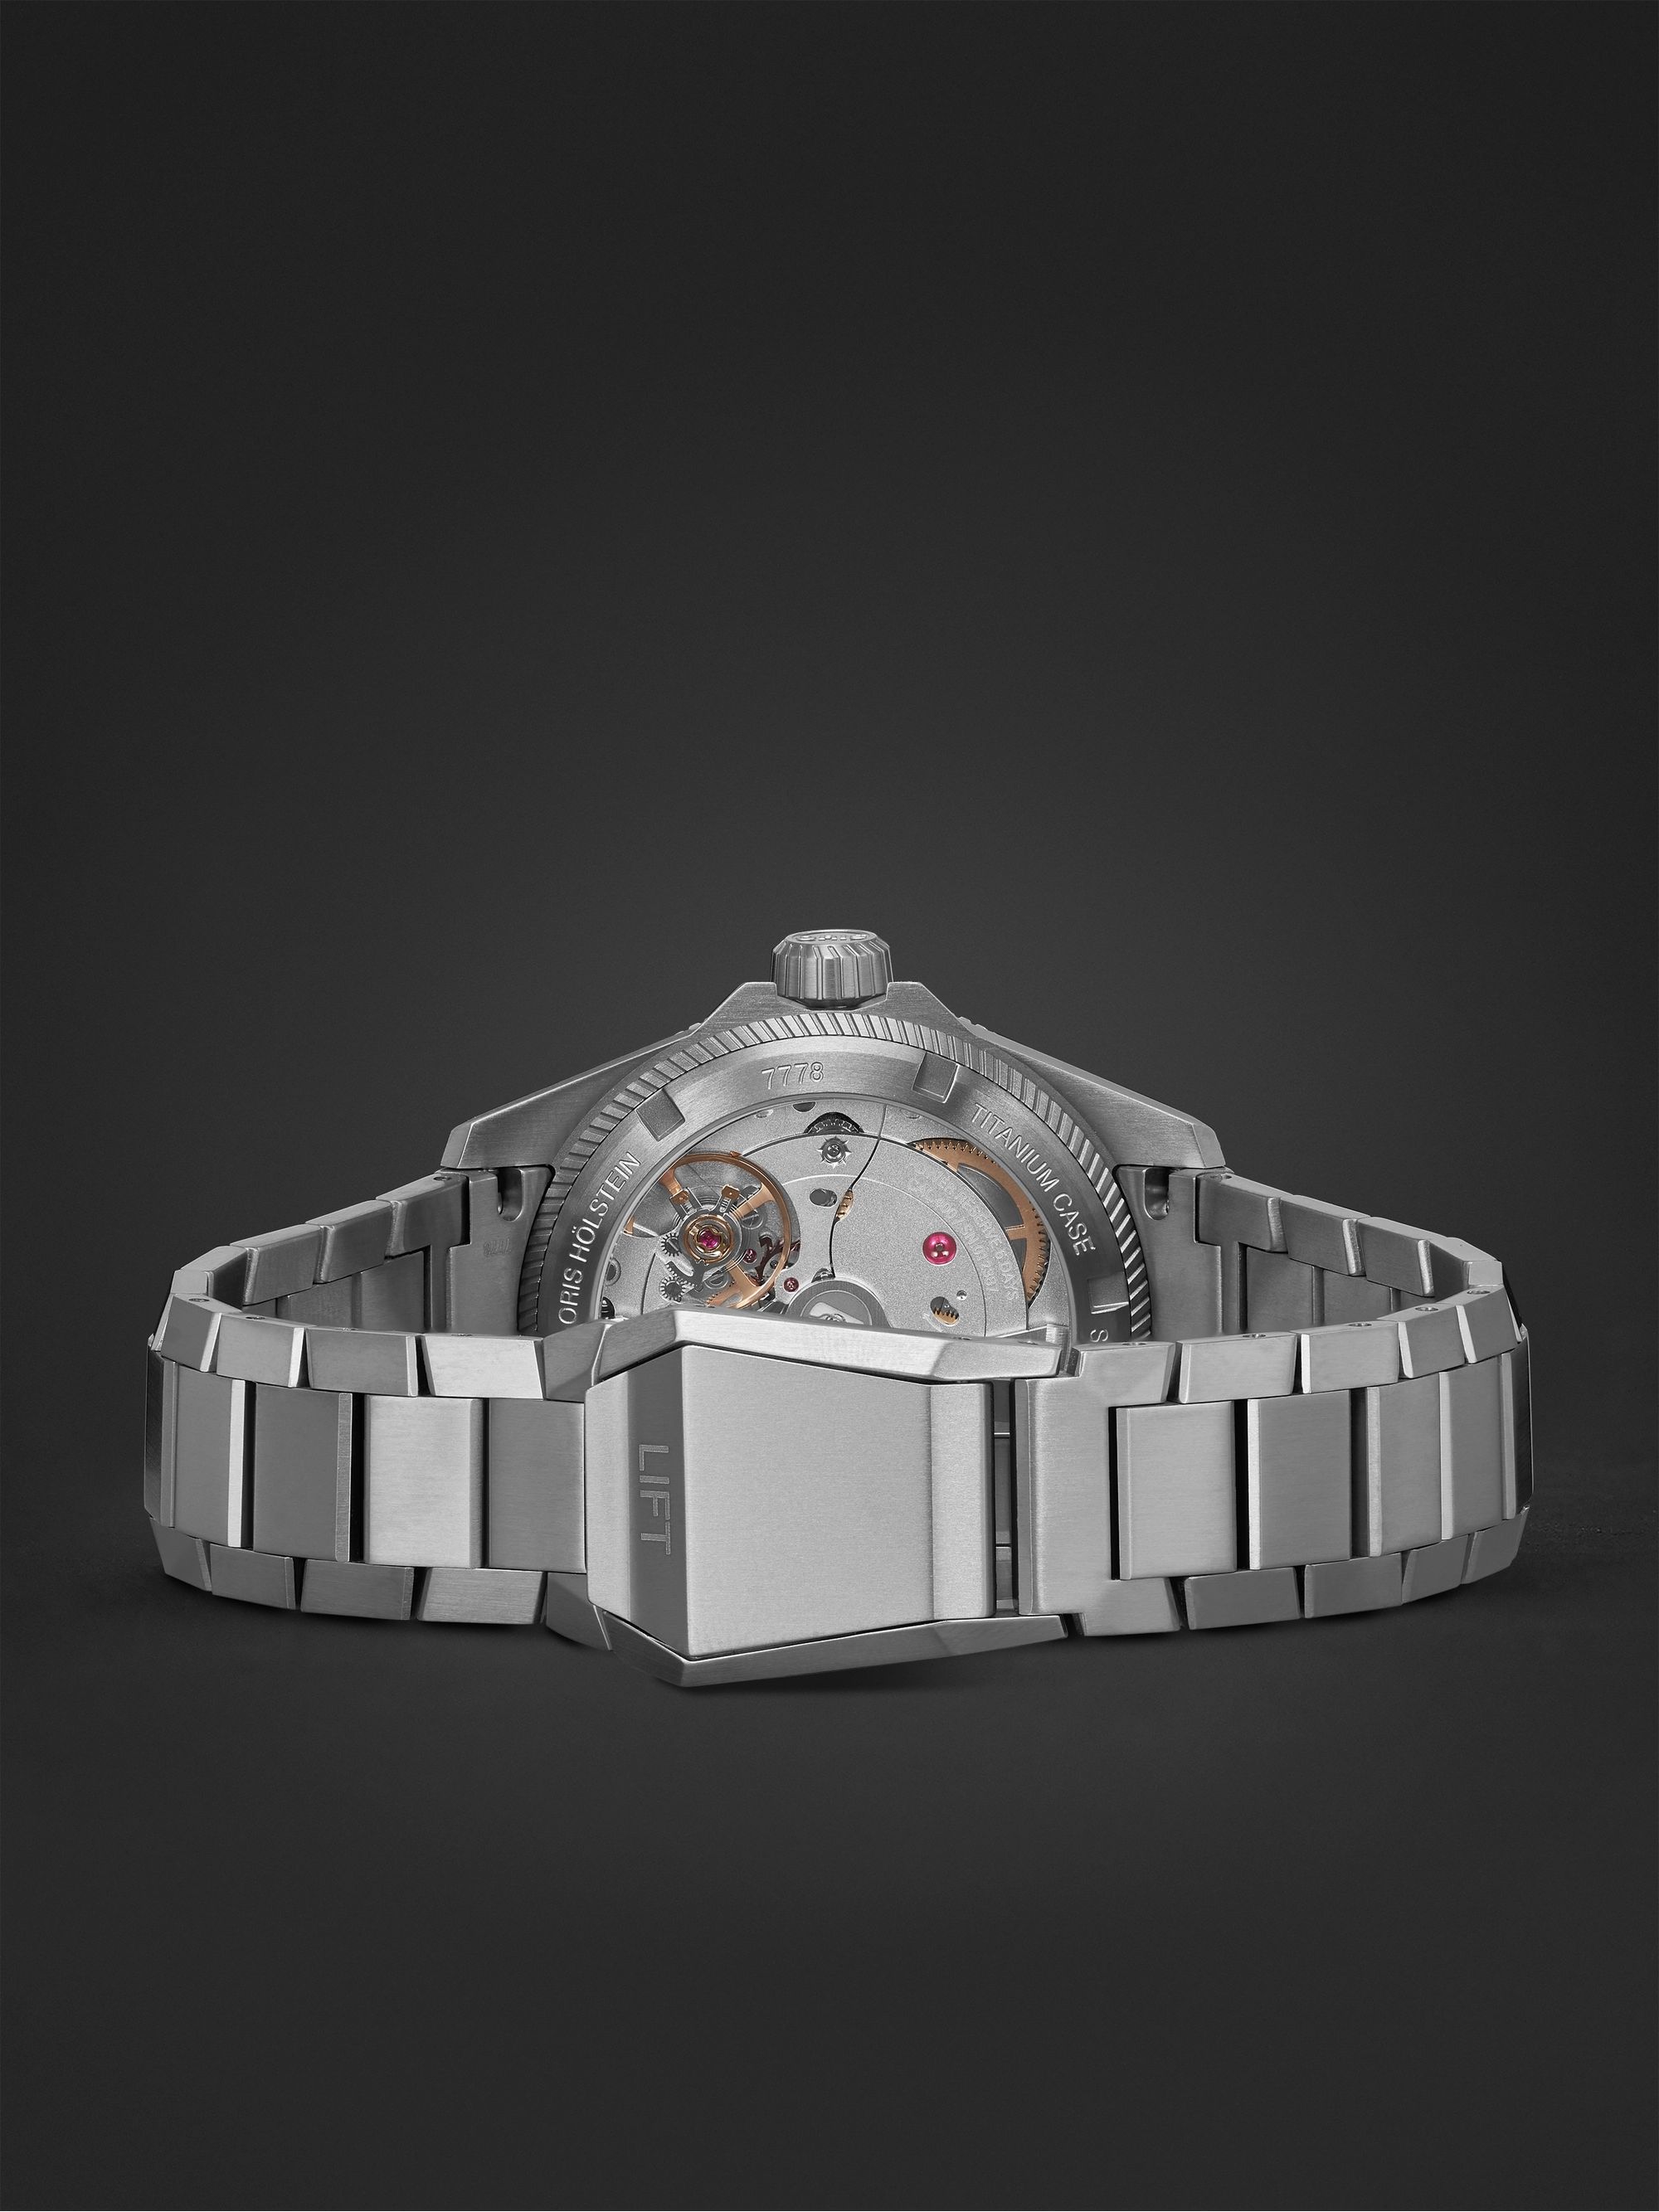 ORIS ProPilot X Calibre 400 Automatic 39mm Titanium Watch, Ref. No. 01 400 7778 7153-07 7 20 01TLC